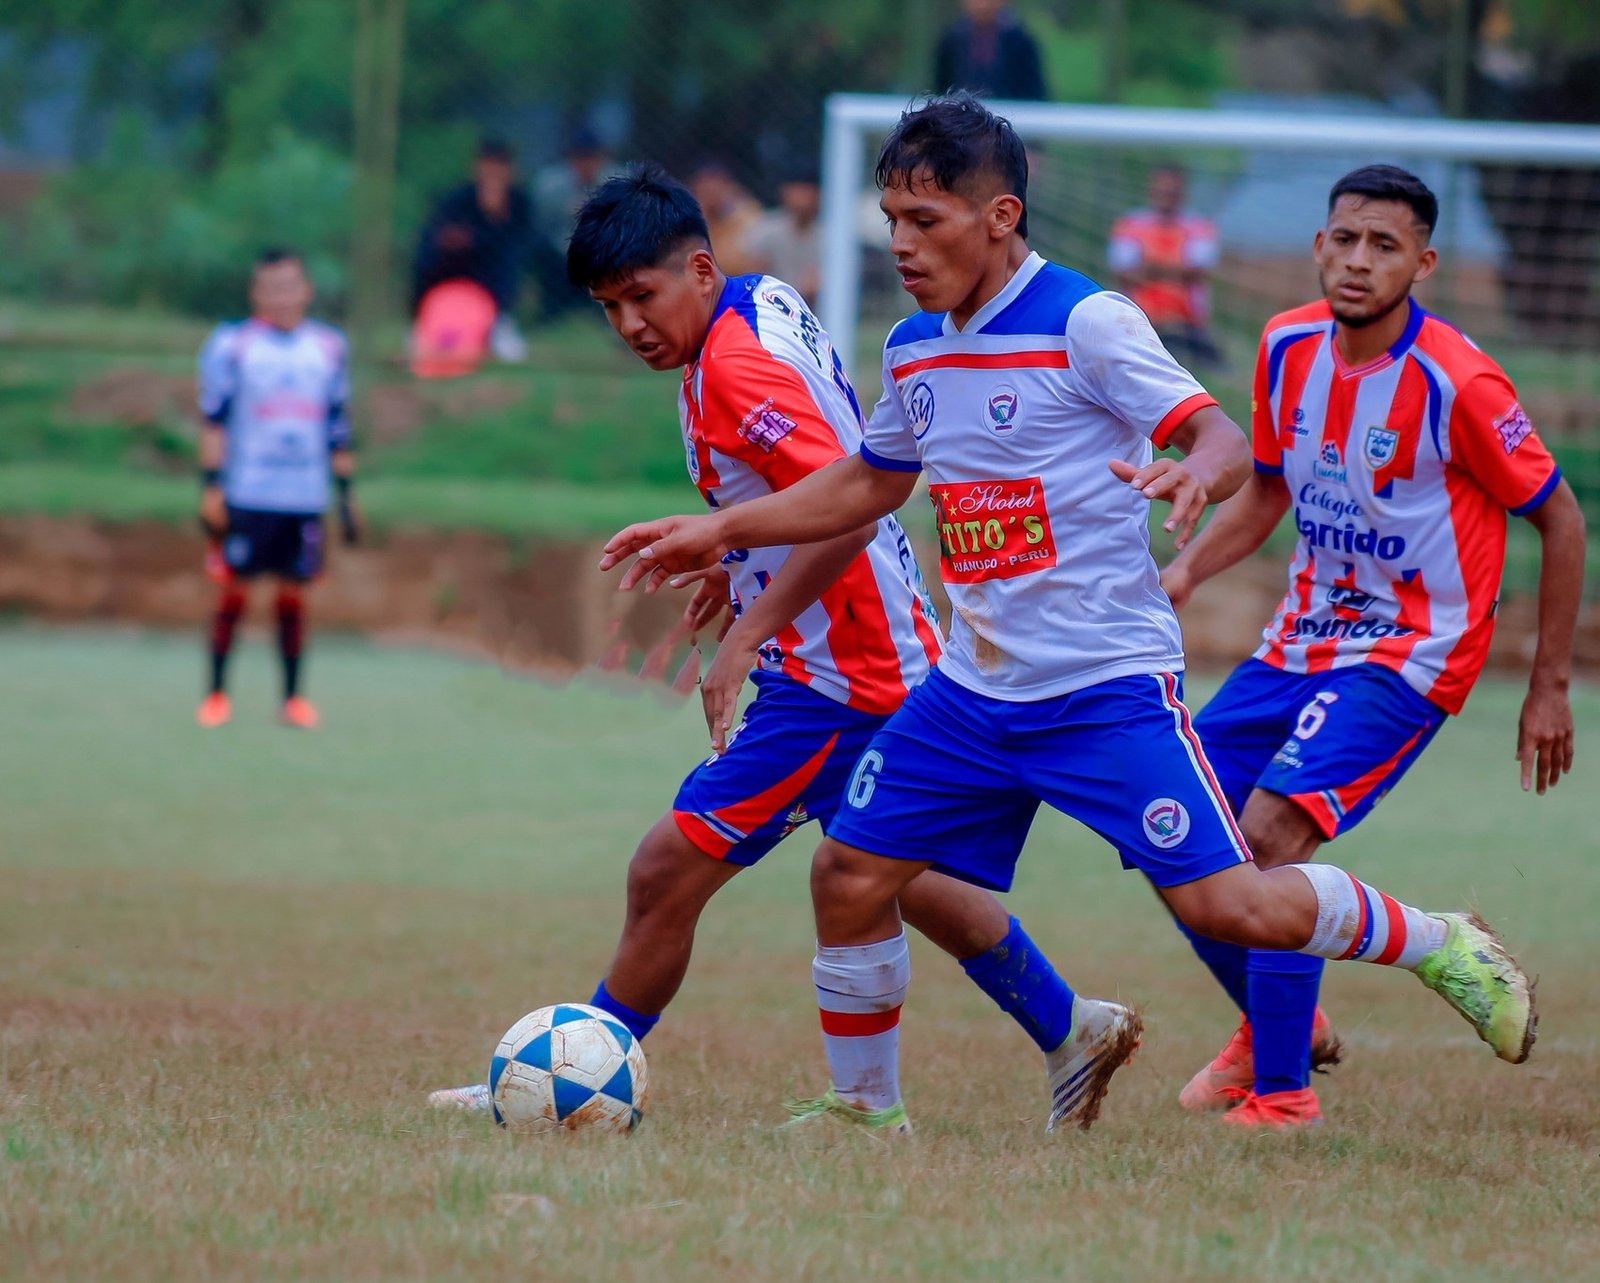 Tercera jornada de la Copa Perú en Pillco Marca fue con algunos resultados abultados